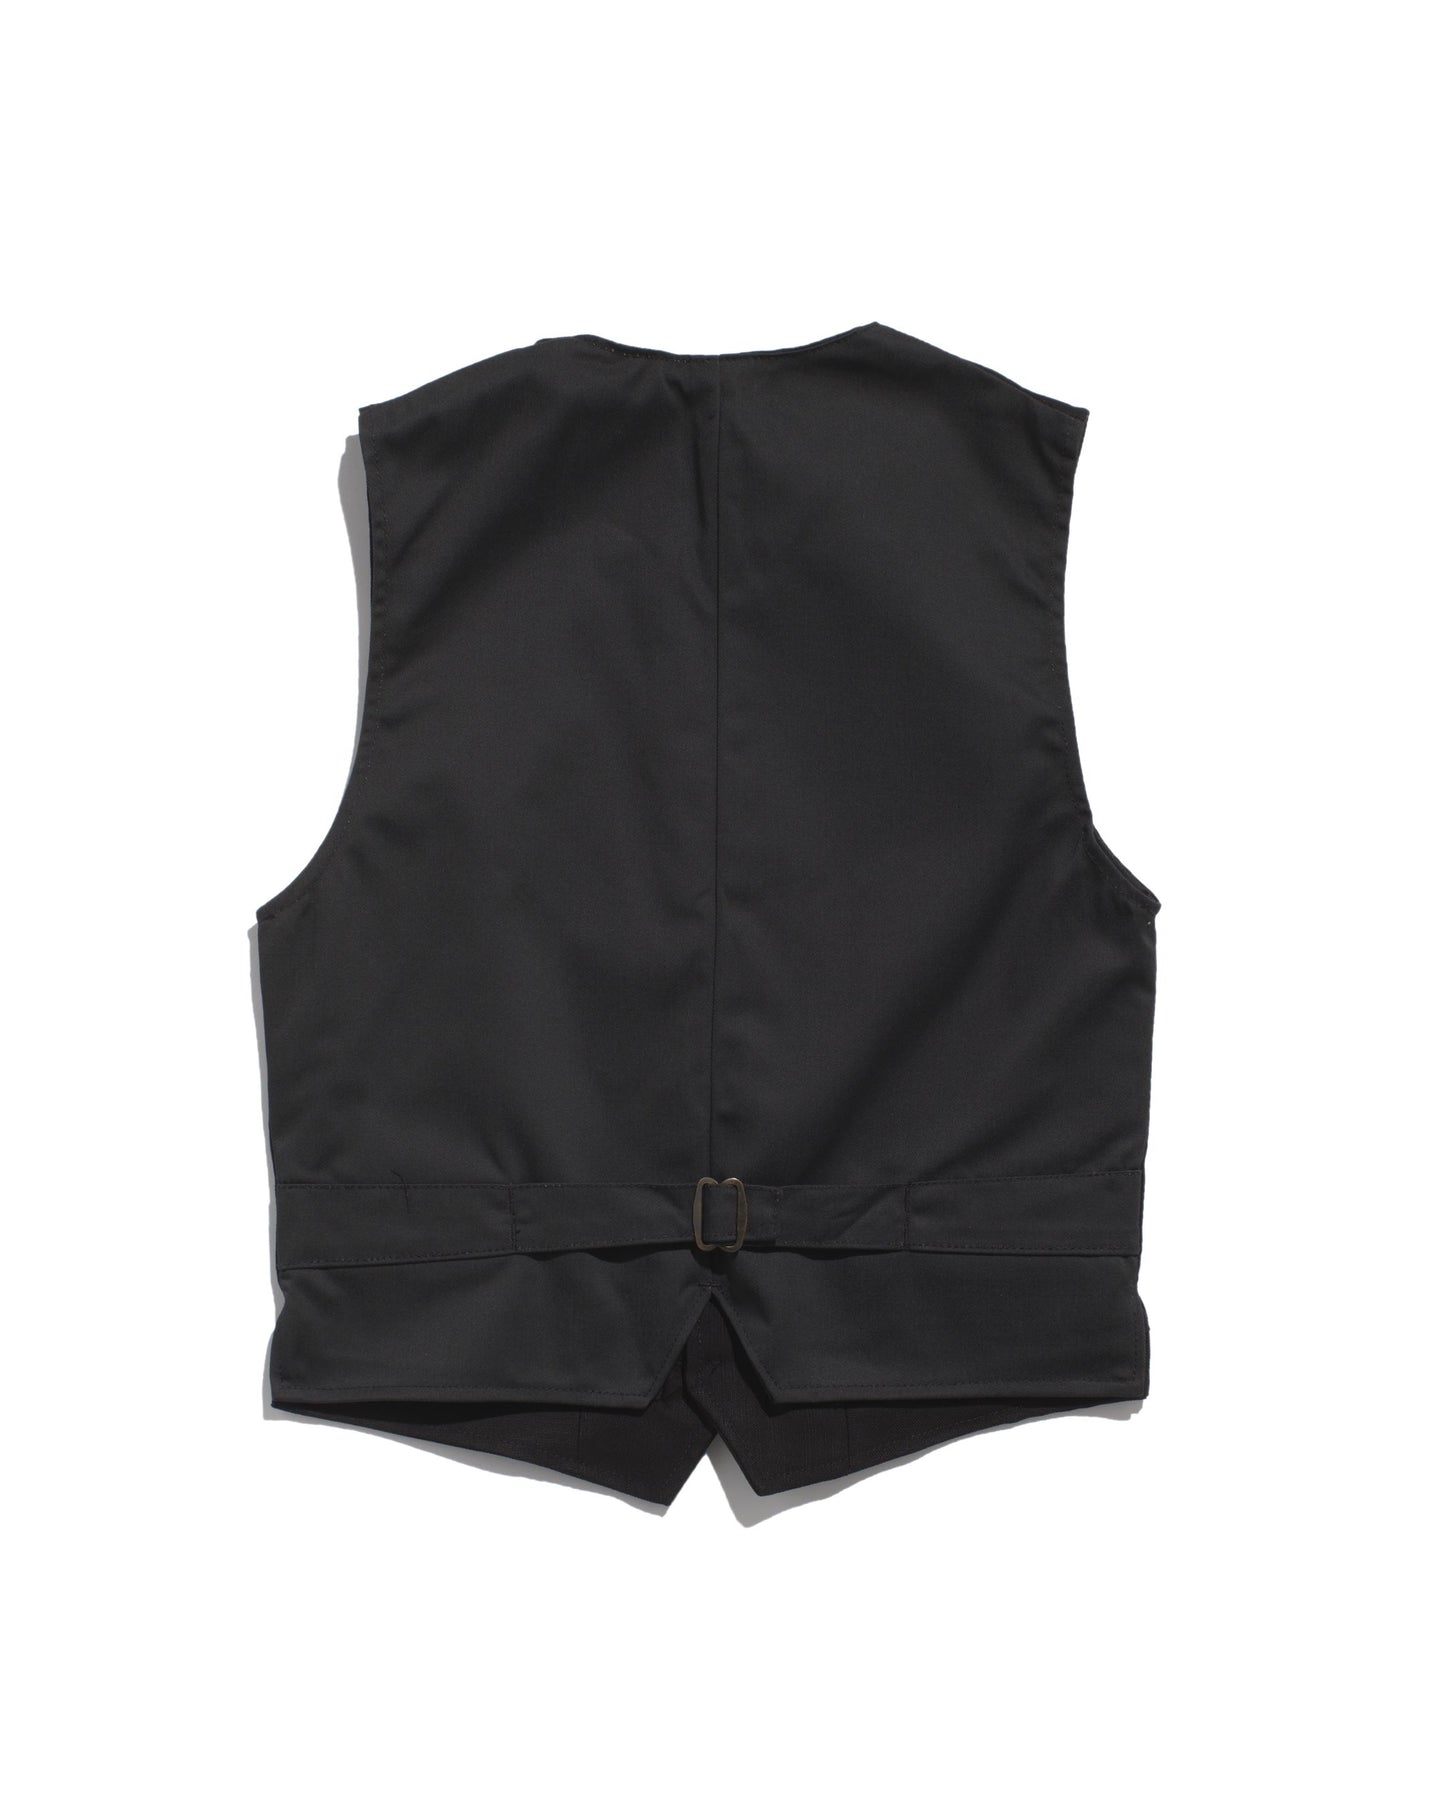 Le Laboureur vest in black linen/cotton mix